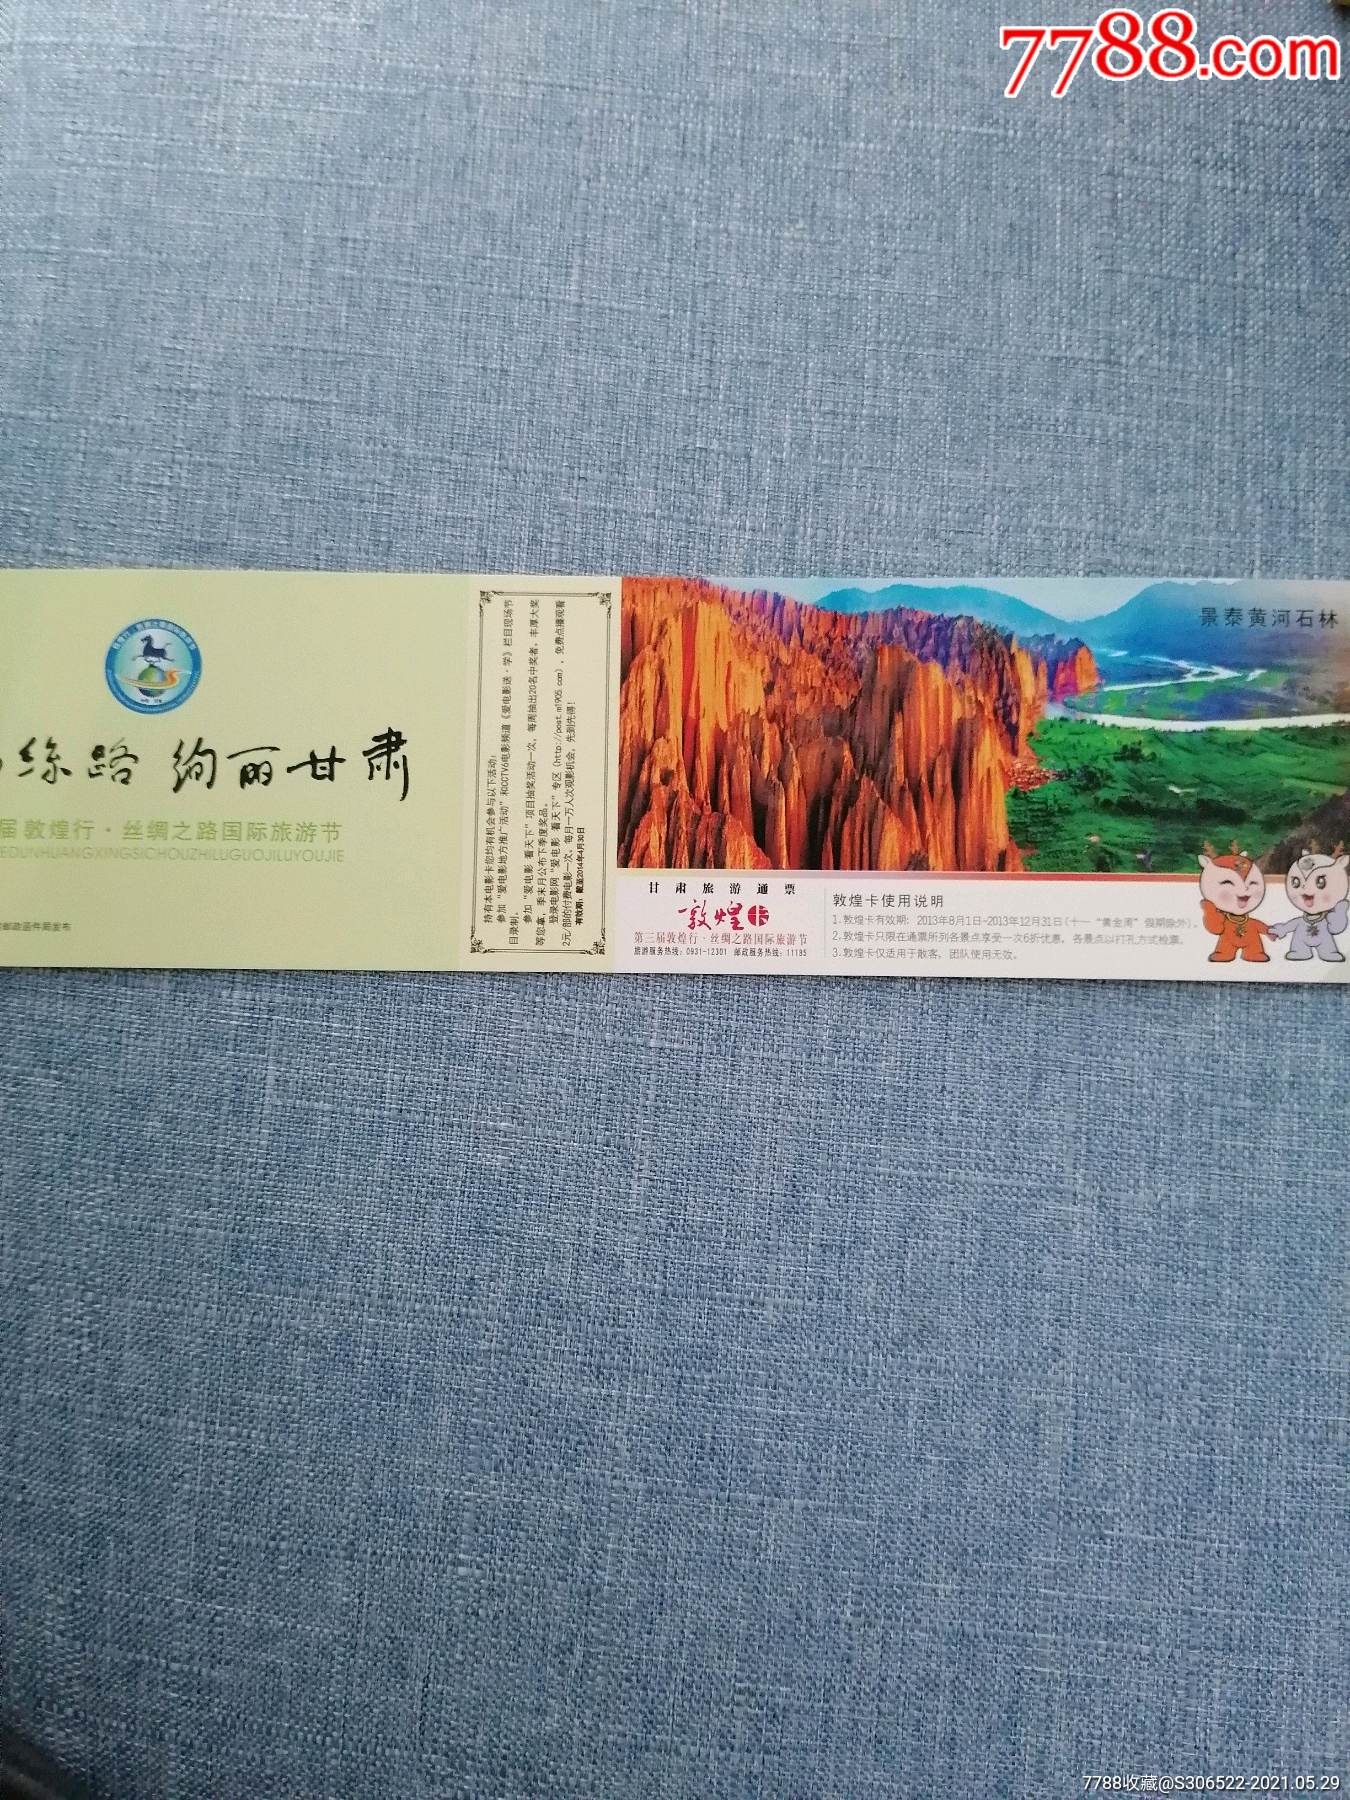 景泰石林景区门票图片